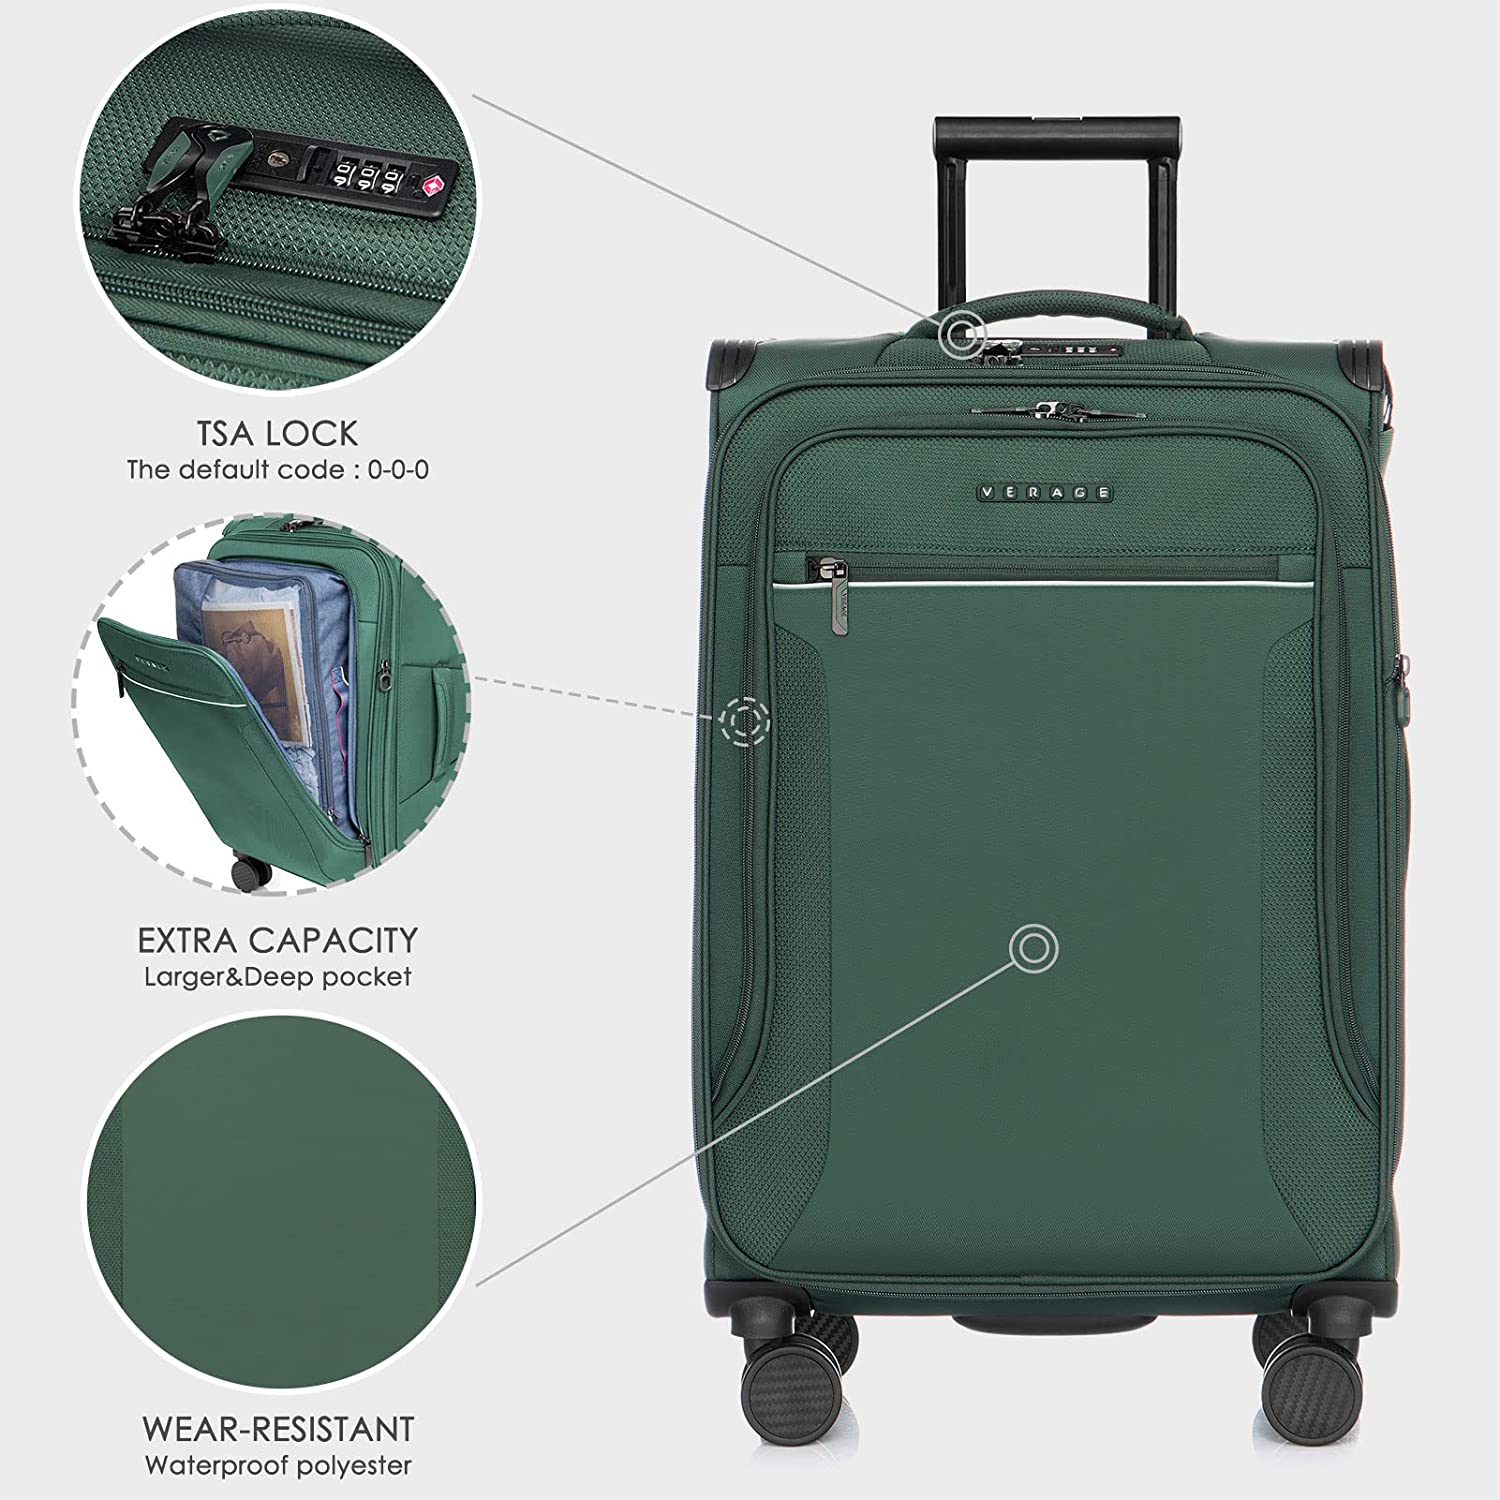 סט 3 מזוודות רכות קלות במיוחד דגם TOLEDO 3 Premium מבית היוקרה Verage אנגליה